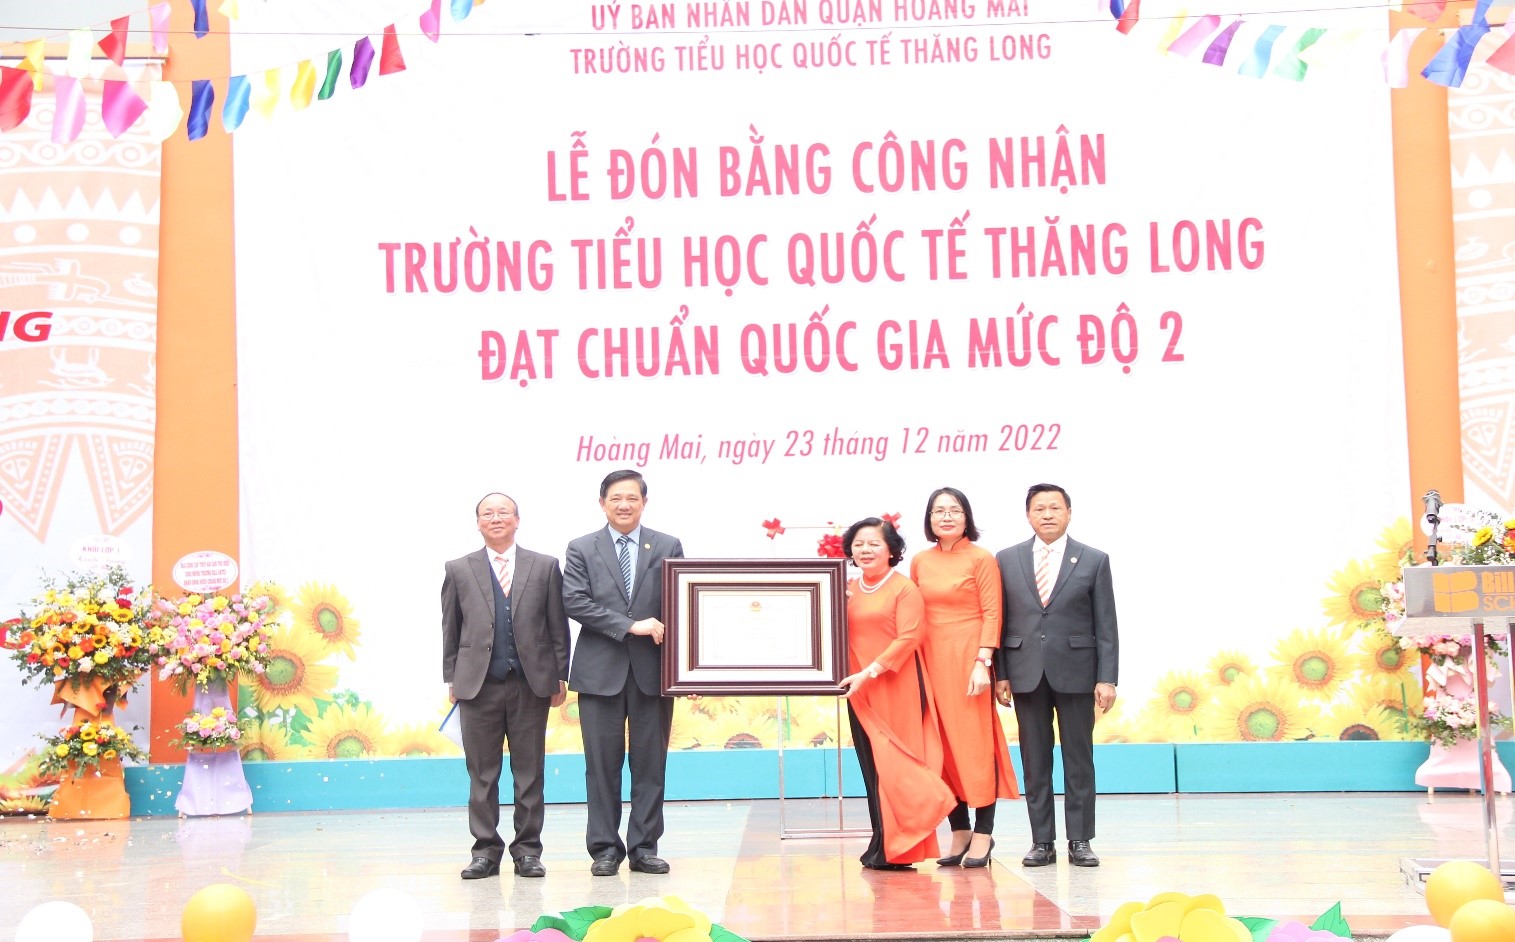 Trường Tiểu học Quốc tế Thăng long vinh dự được nhận Trường chuẩn Quốc gia mức độ 2 lần thứ 2 